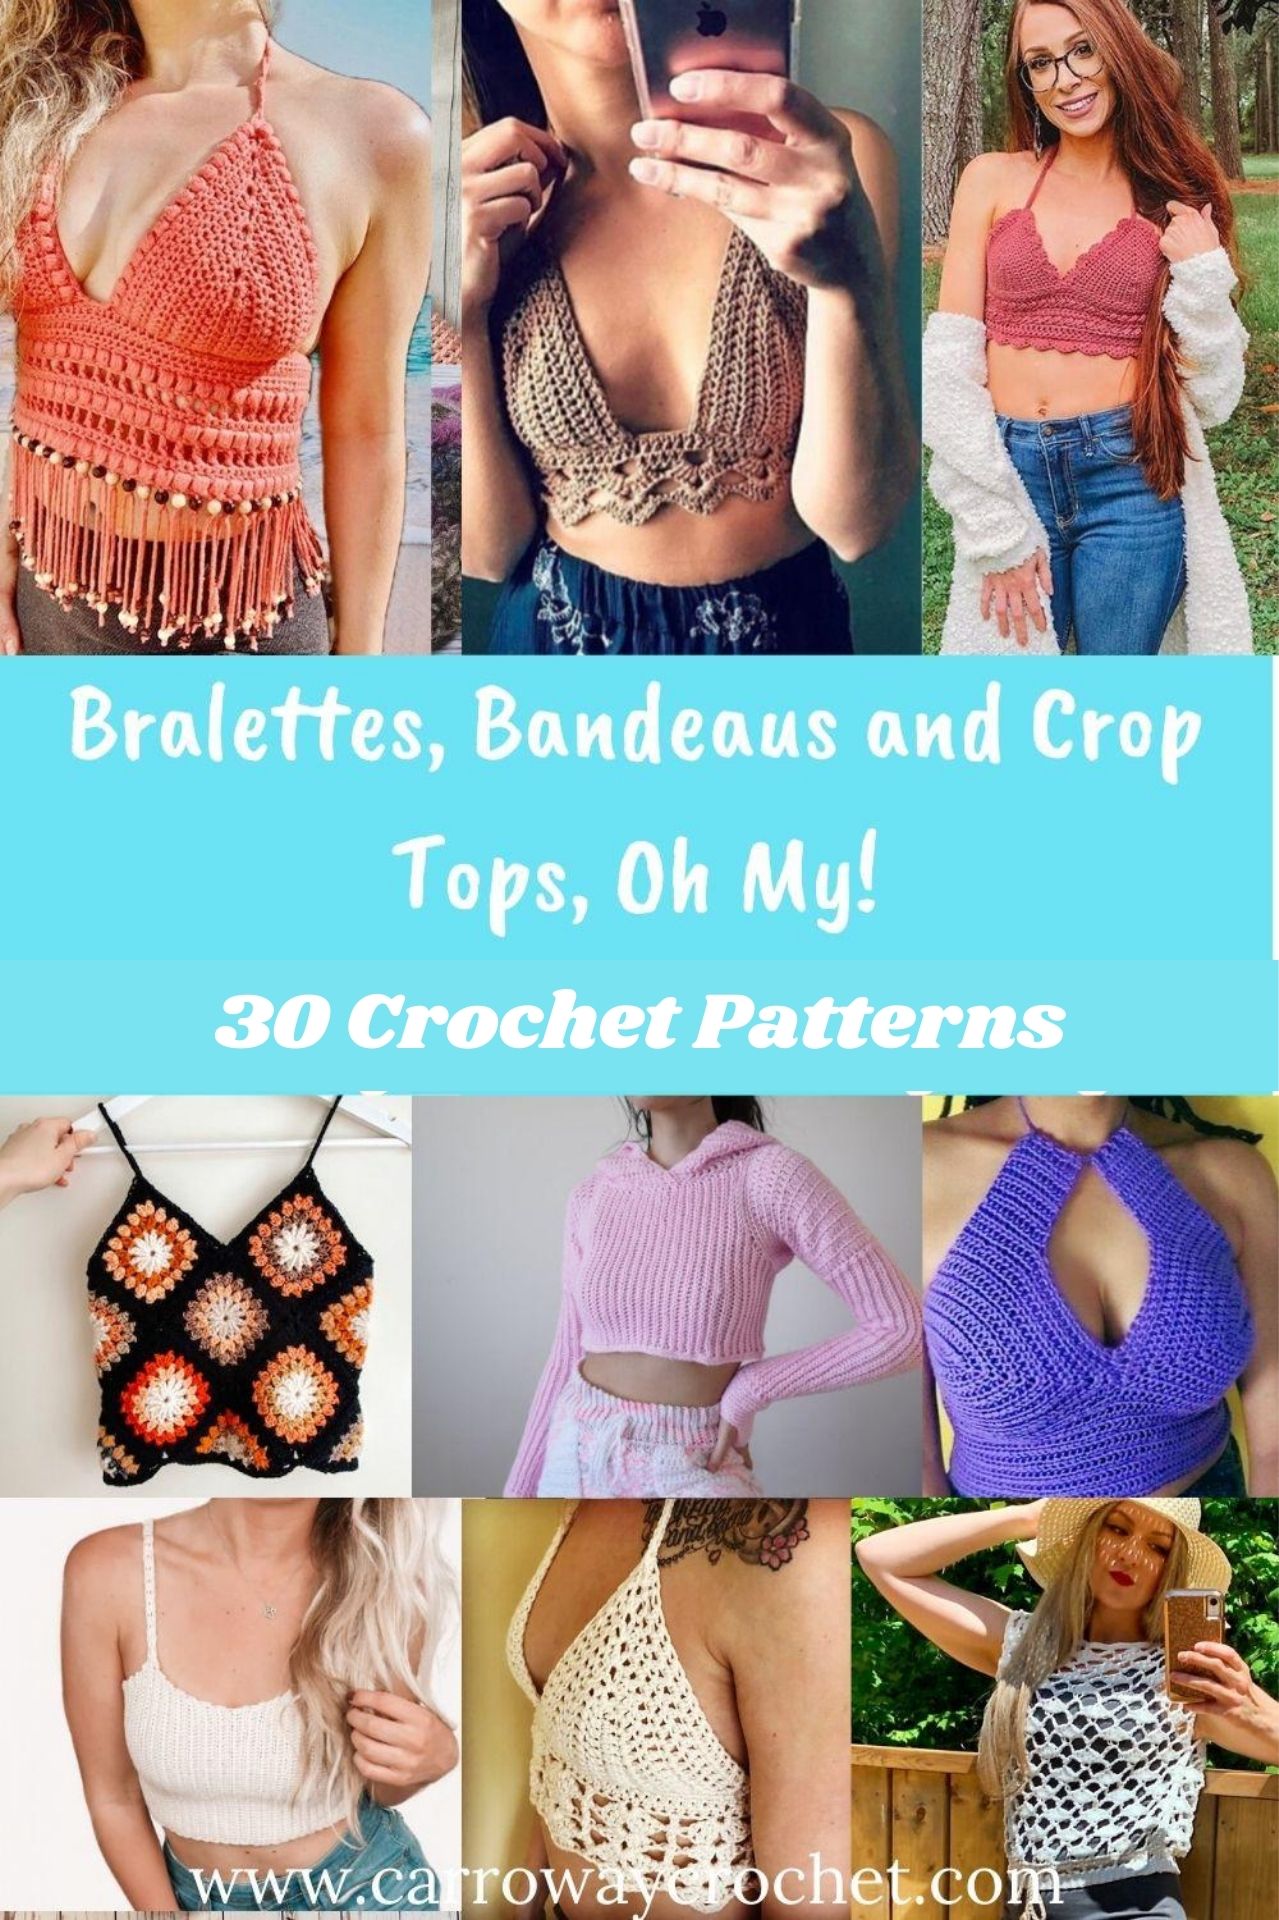 FREE Berry Bralette Top: Crochet pattern